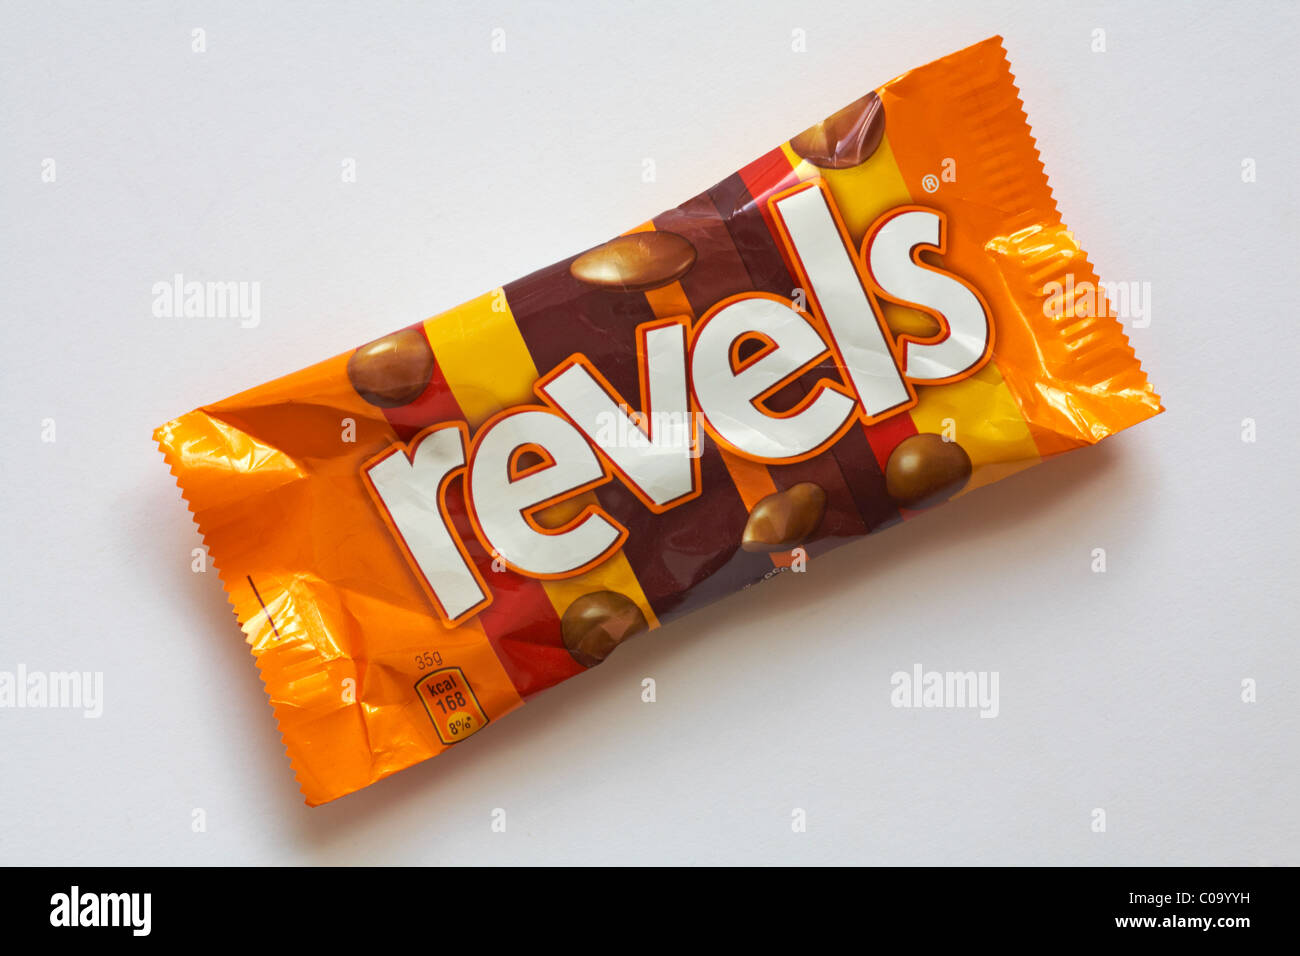 Paket von Revels Pralinen isoliert auf weißem Hintergrund Stockfoto